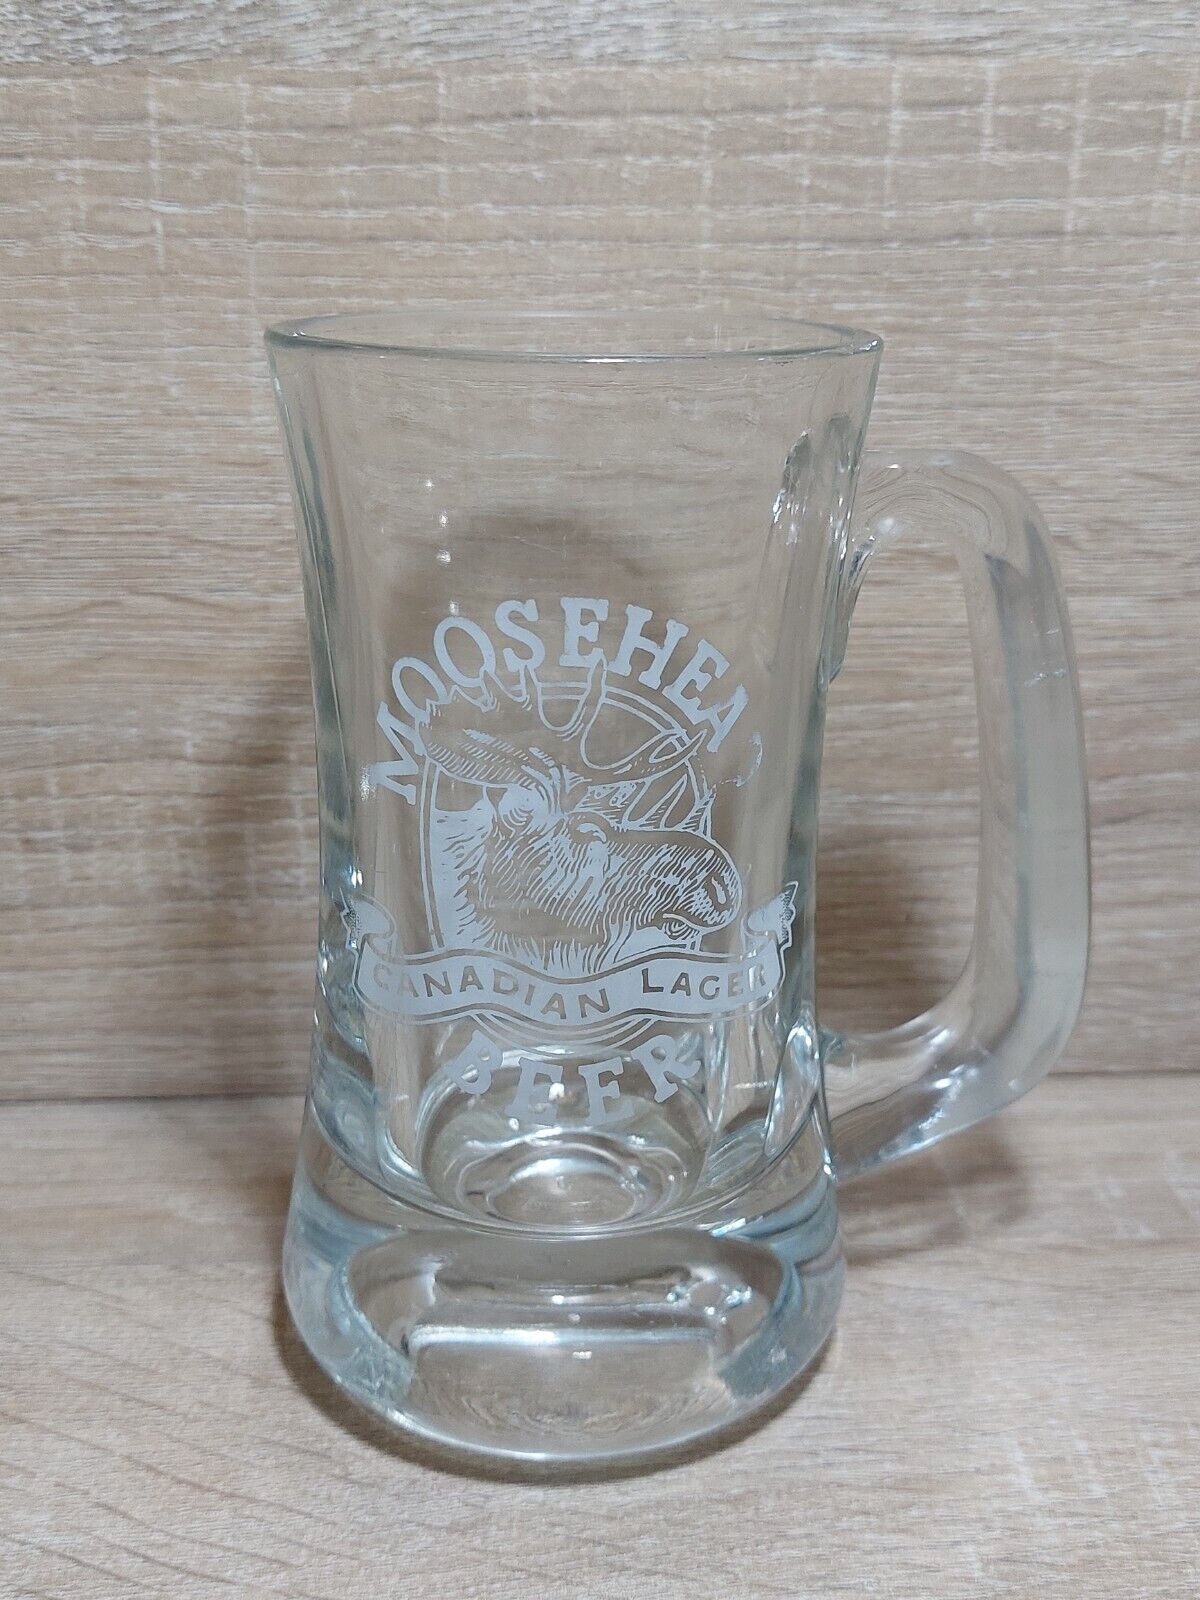 Moosehead Canadian Lager Beer Mug